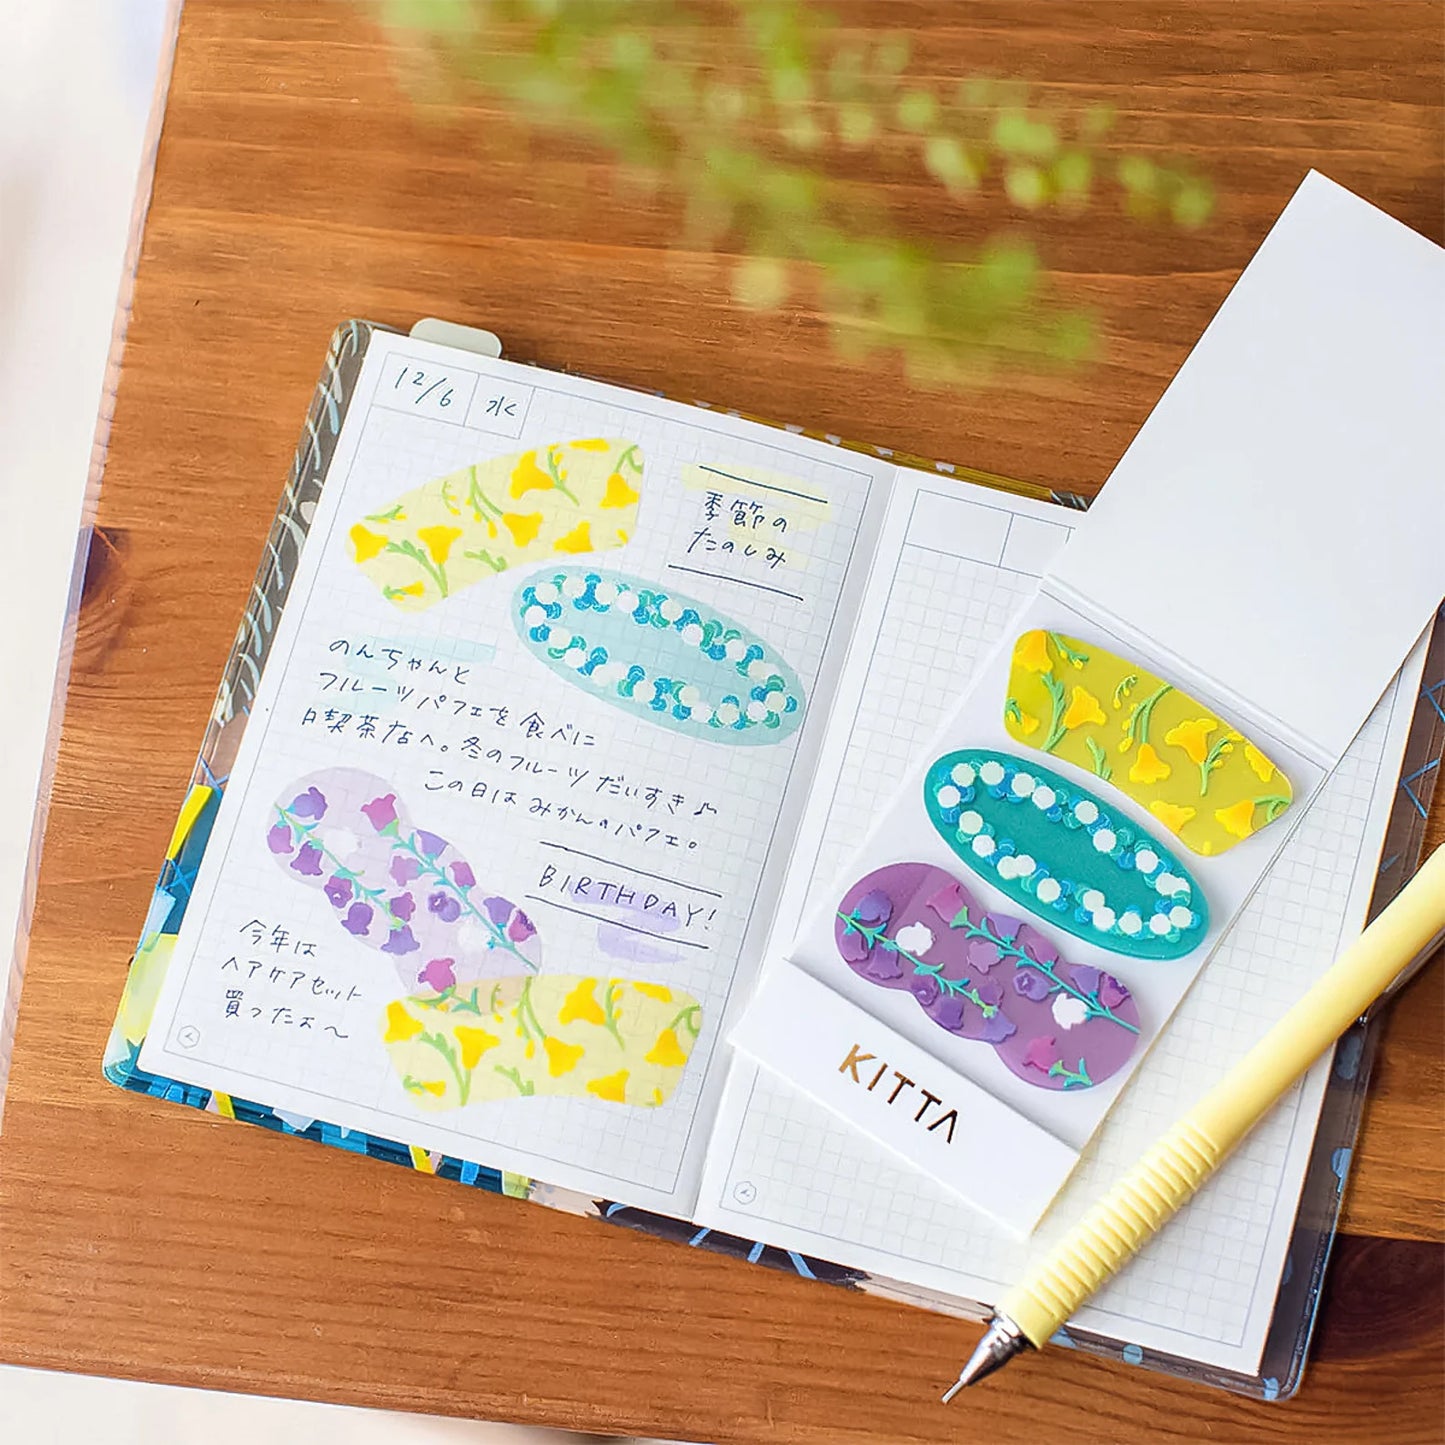 KITTA Clear Washi Tape - Flower Petals